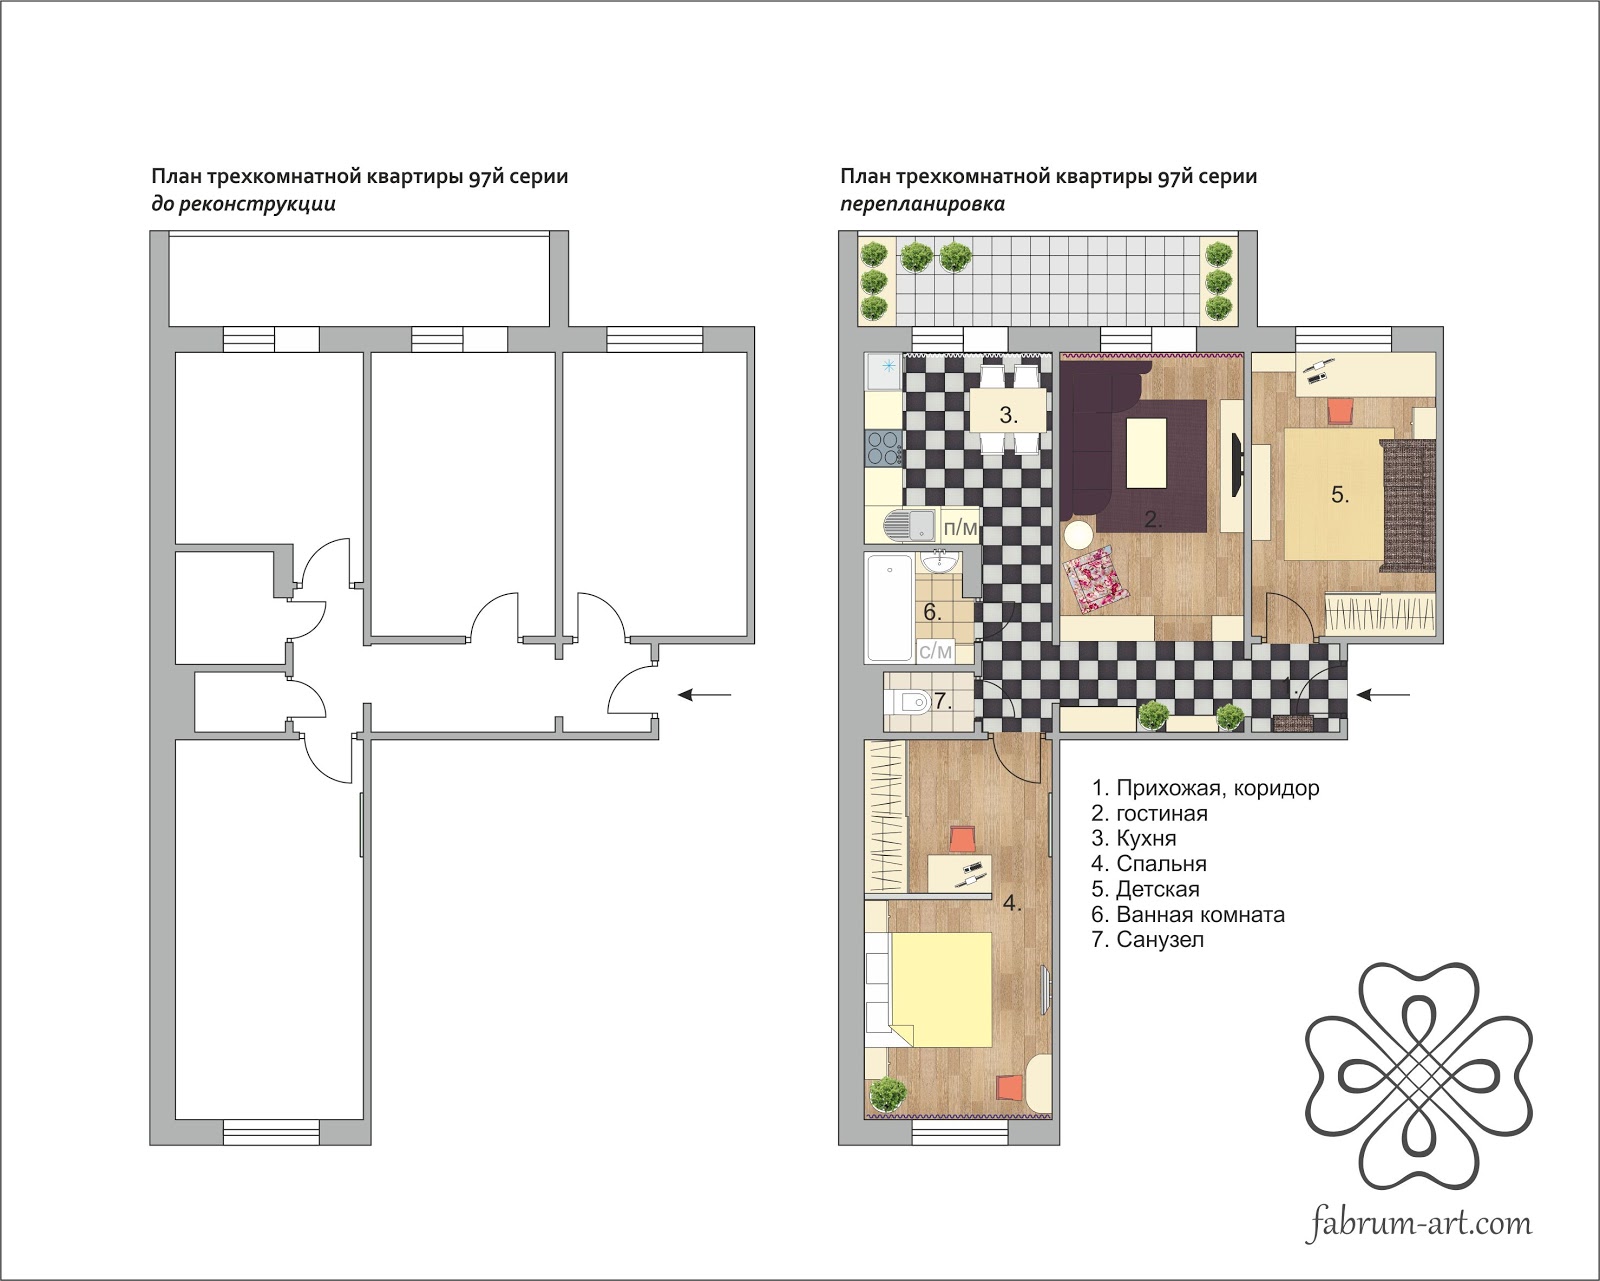 Tipični planovi stanova u Barnaulu: planiranje stanova 97 serije